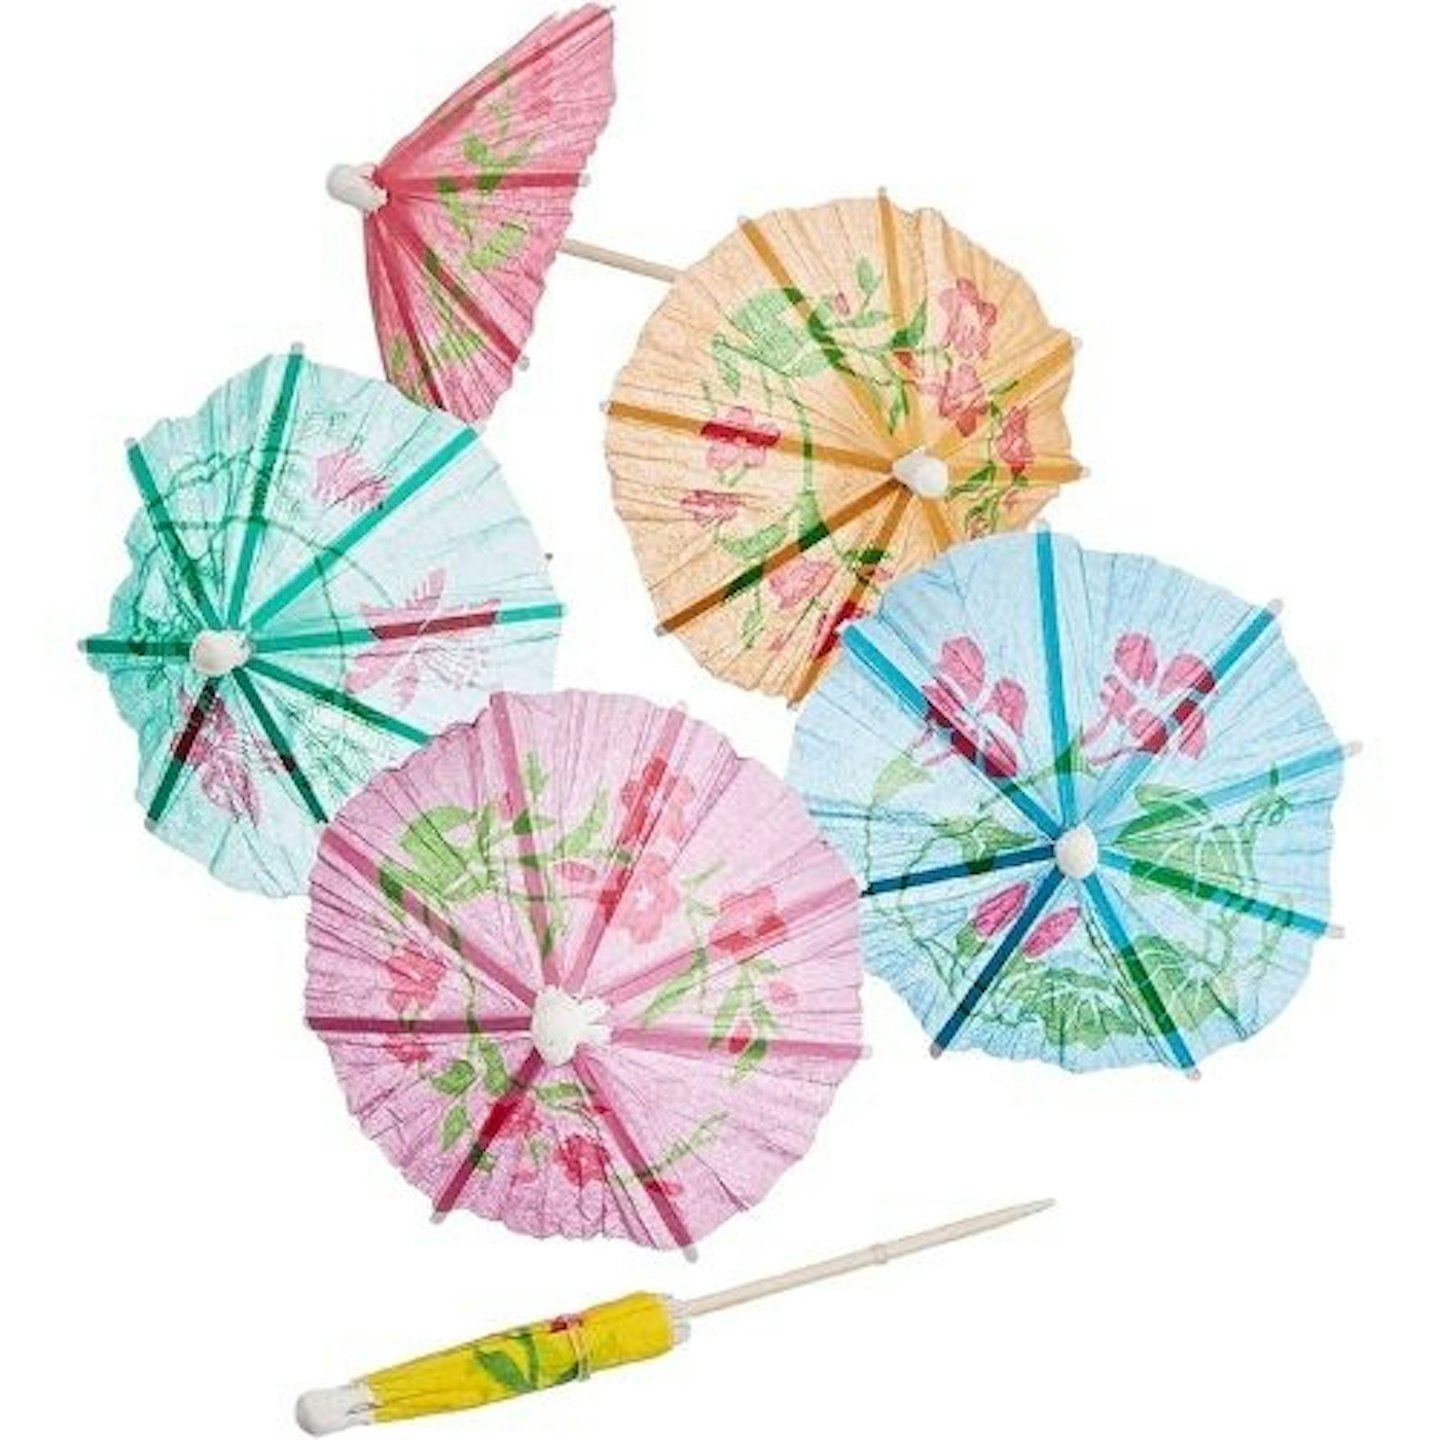 Mini paper umbrellas.